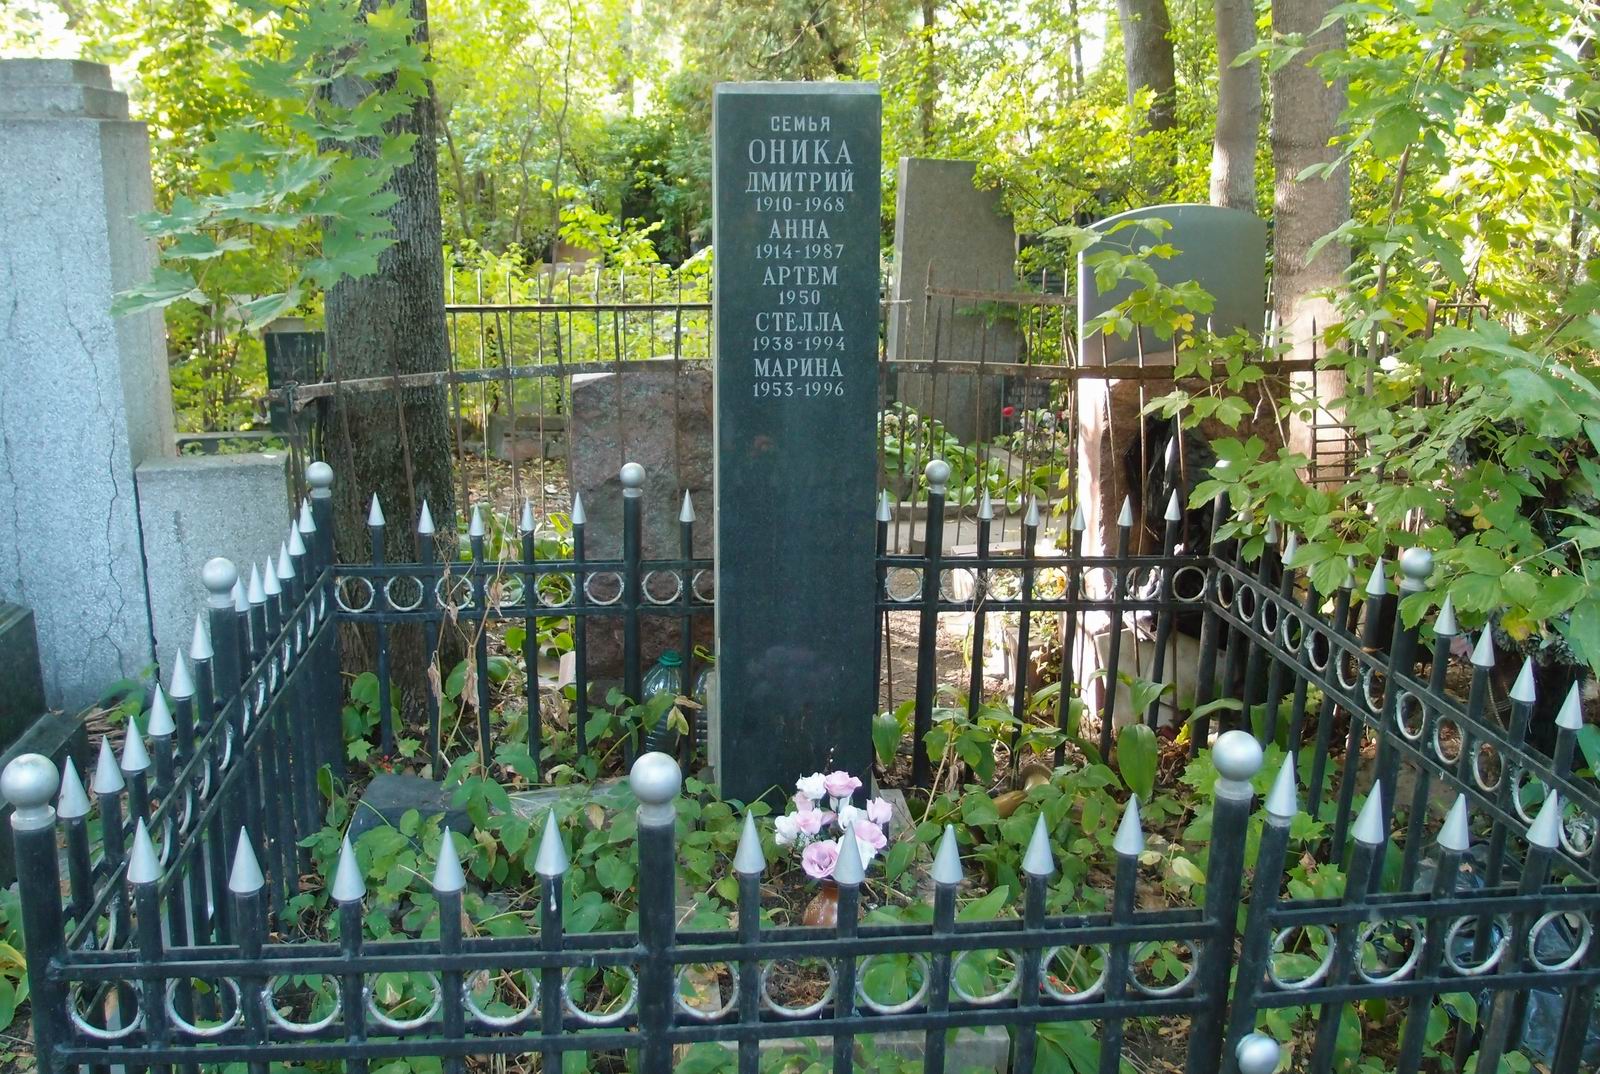 Памятник на могиле Оники Д.Г. (1910-1968), на Новодевичьем кладбище (3-35-7).